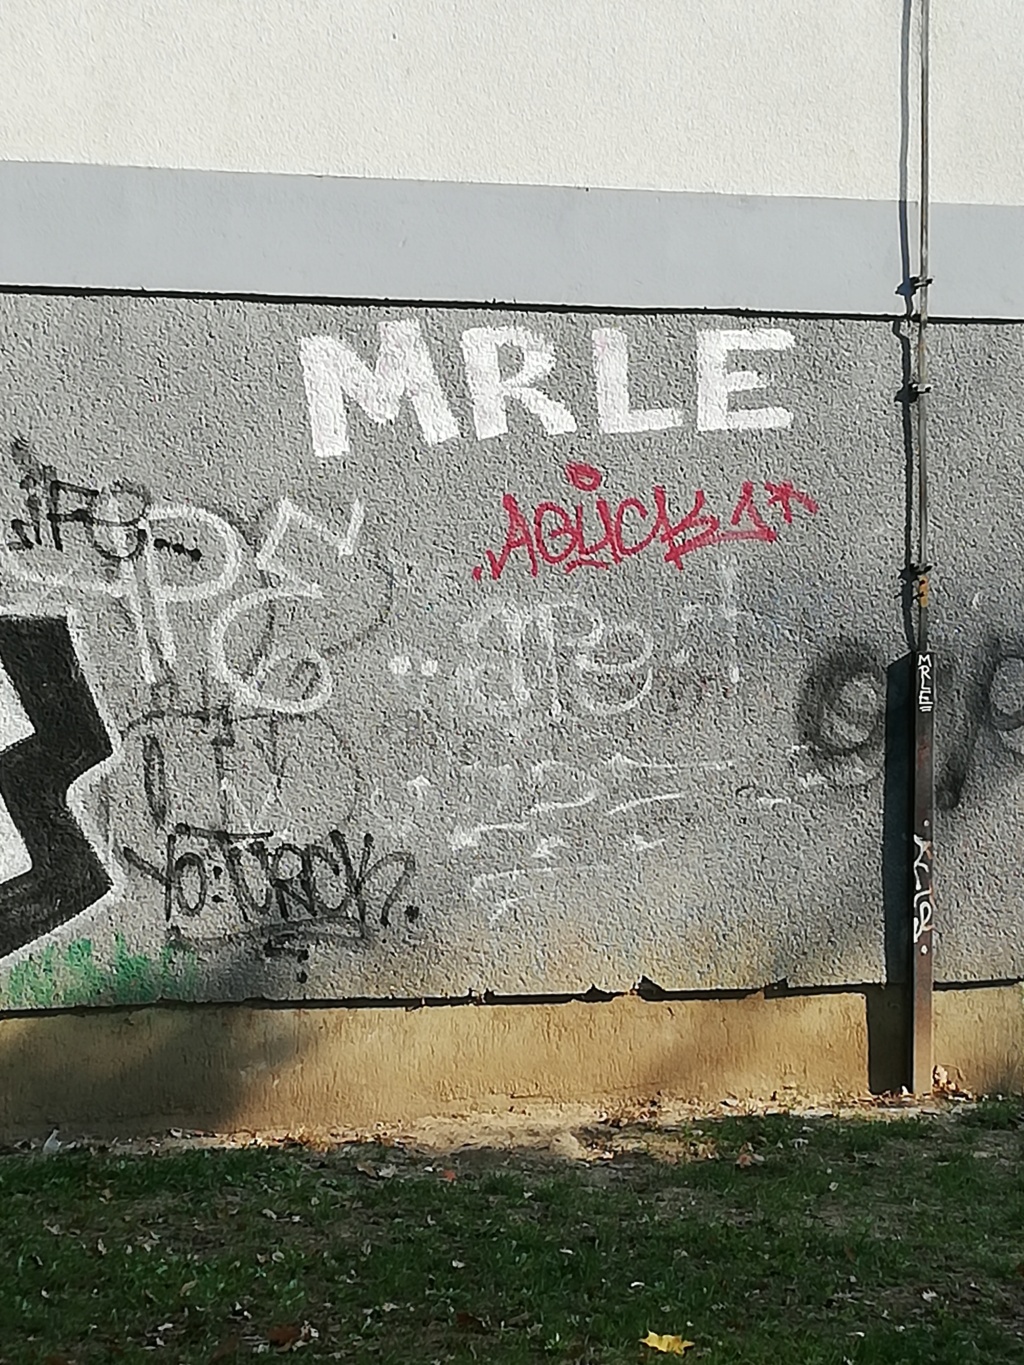 Senfov stranacki kolega naredio da se ukloni mural posvecen braniteljima i Vukovaru.Prosvjednici se okupljaju.Cekaju HEP-ovu dozvolu. Img_2810